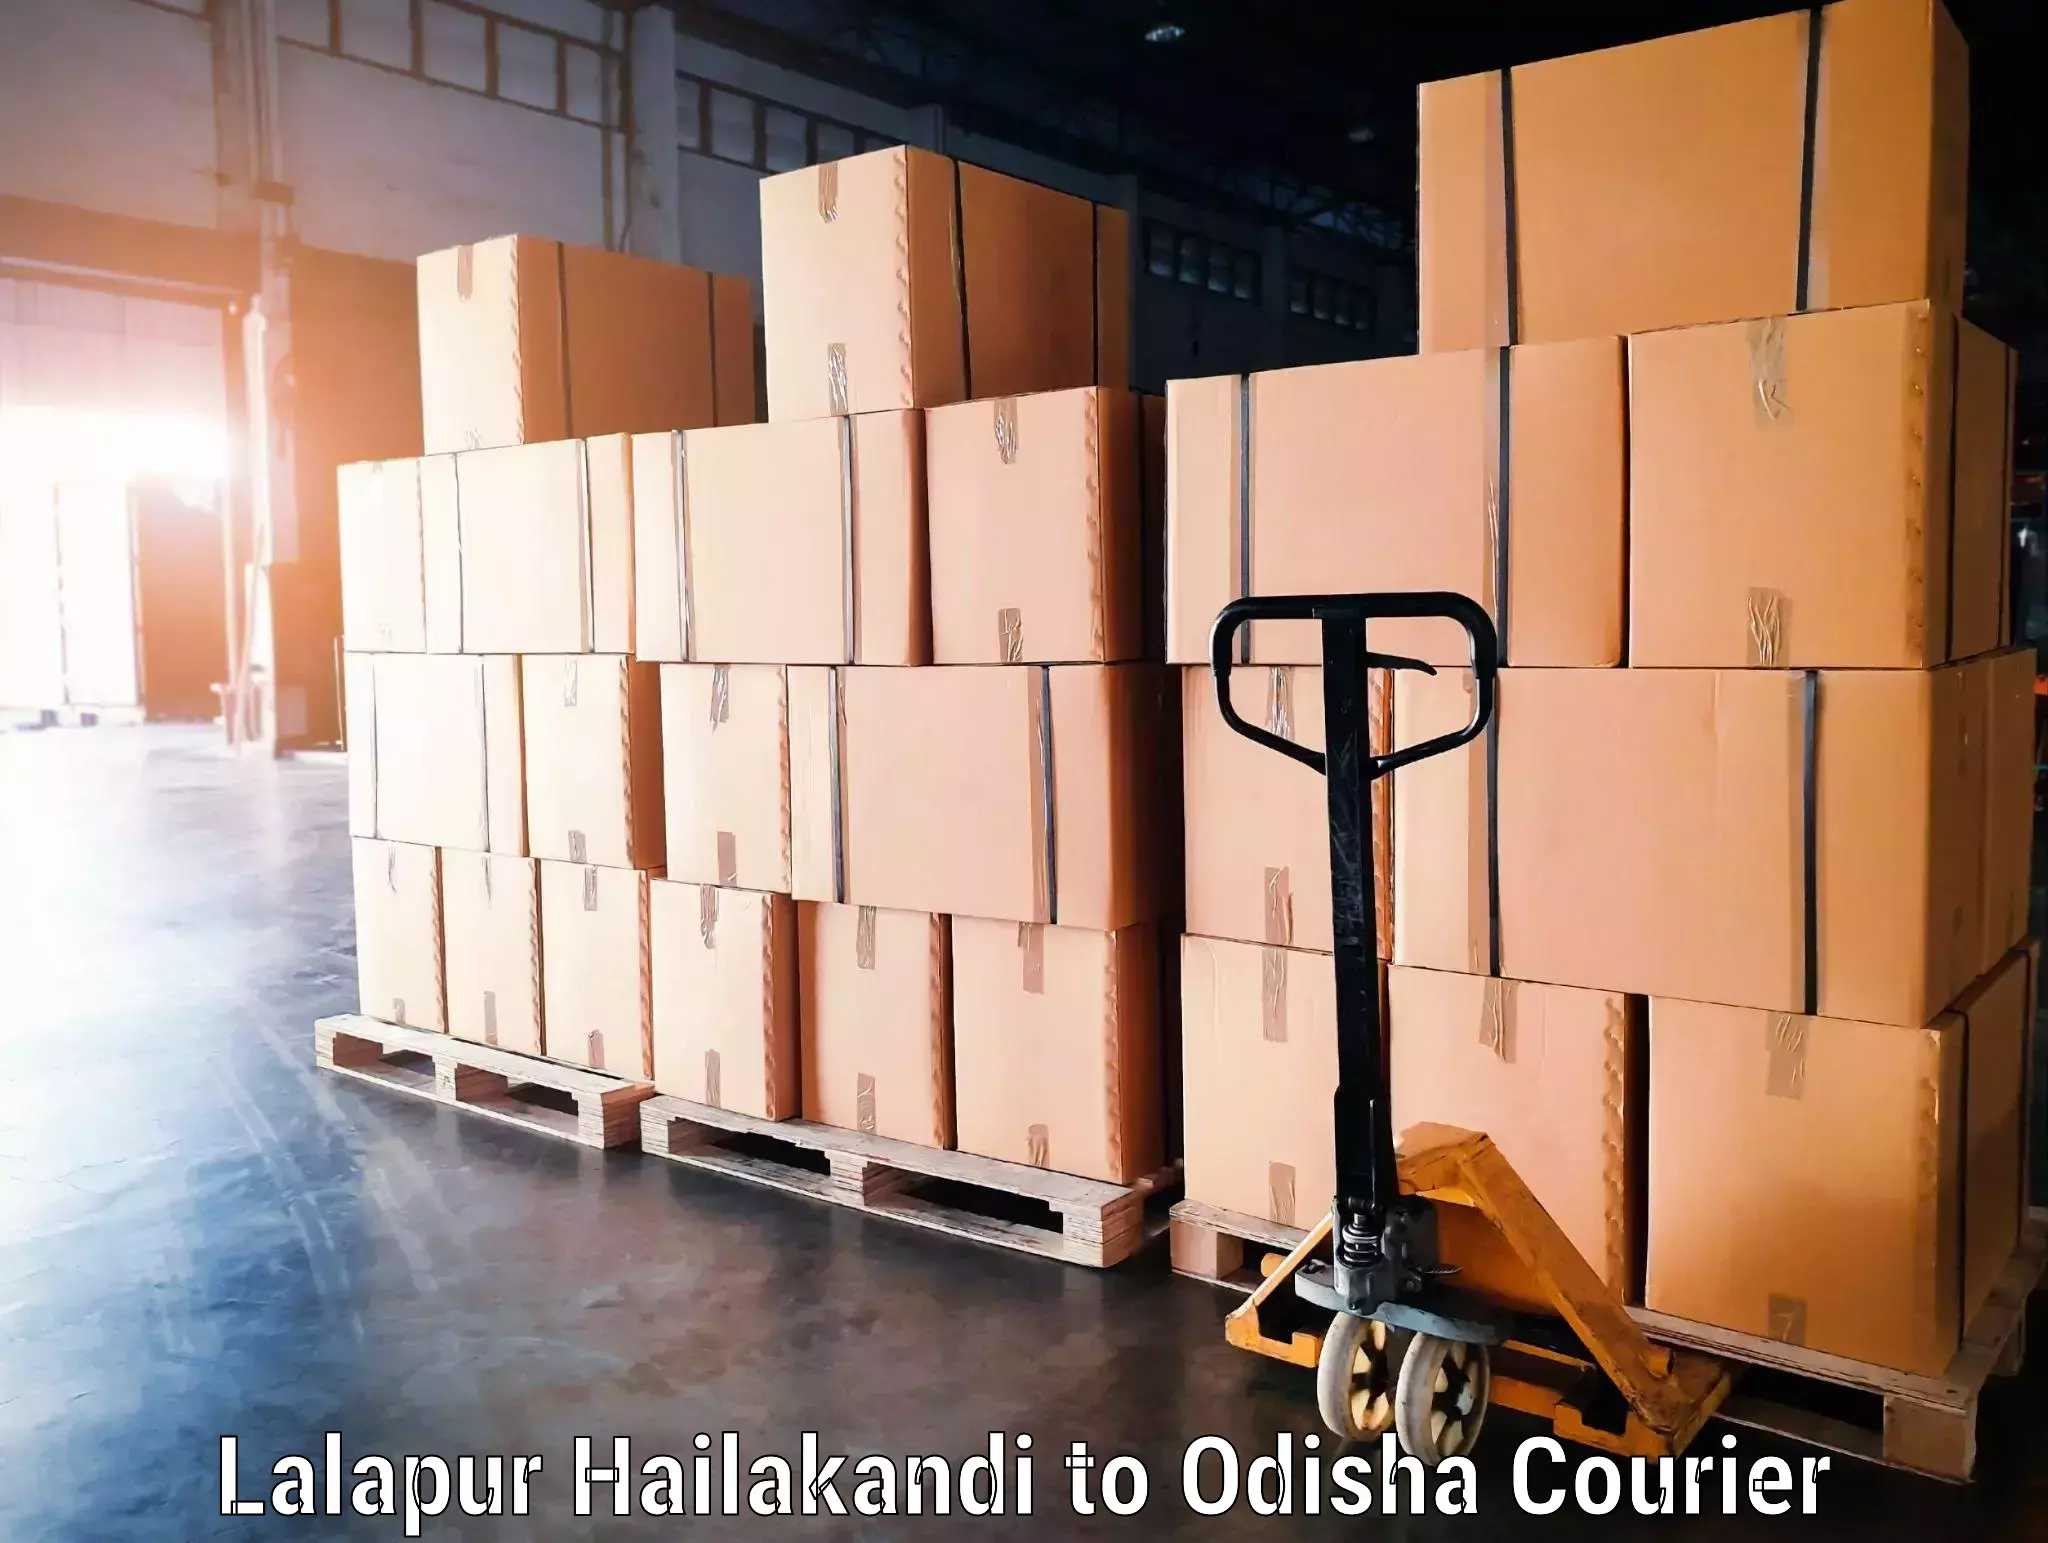 Luggage transport consultancy Lalapur Hailakandi to Kosagumuda